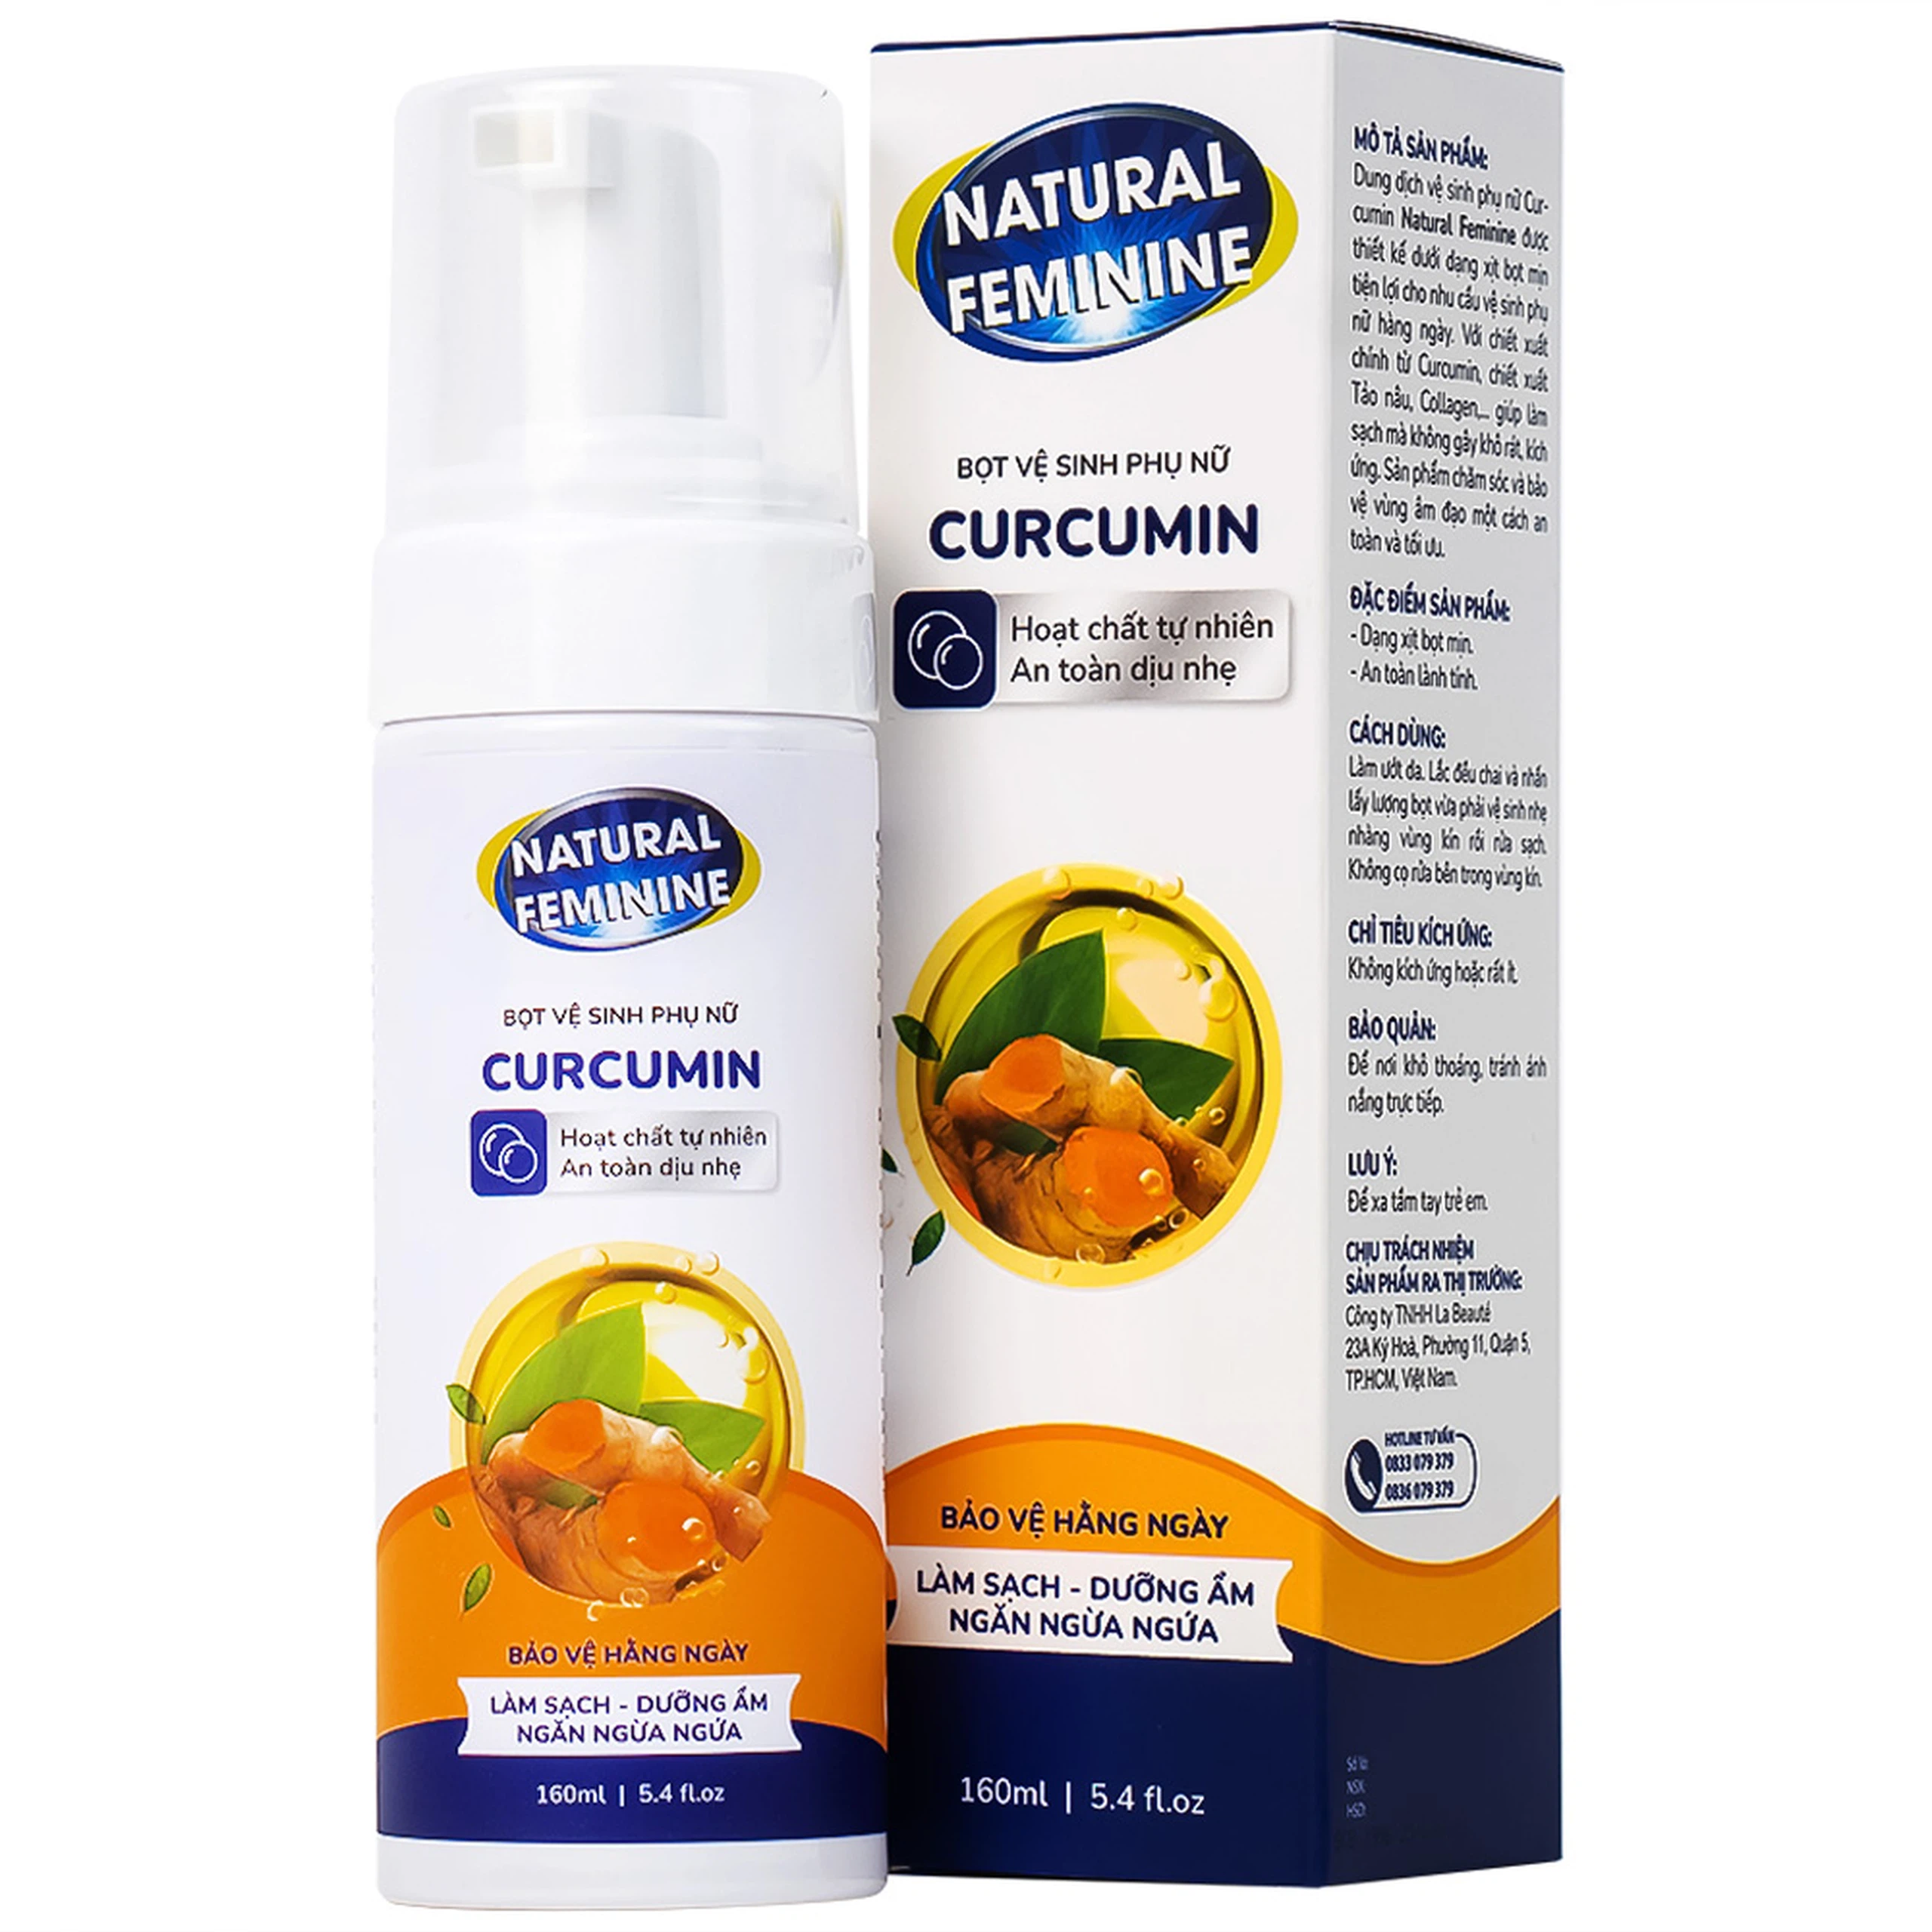 Bọt lau chùi và vệ sinh phụ phái đẹp Curcumin Natural Feminine làm sạch sẽ, chăm sóc độ ẩm, ngăn chặn ngứa (160ml)